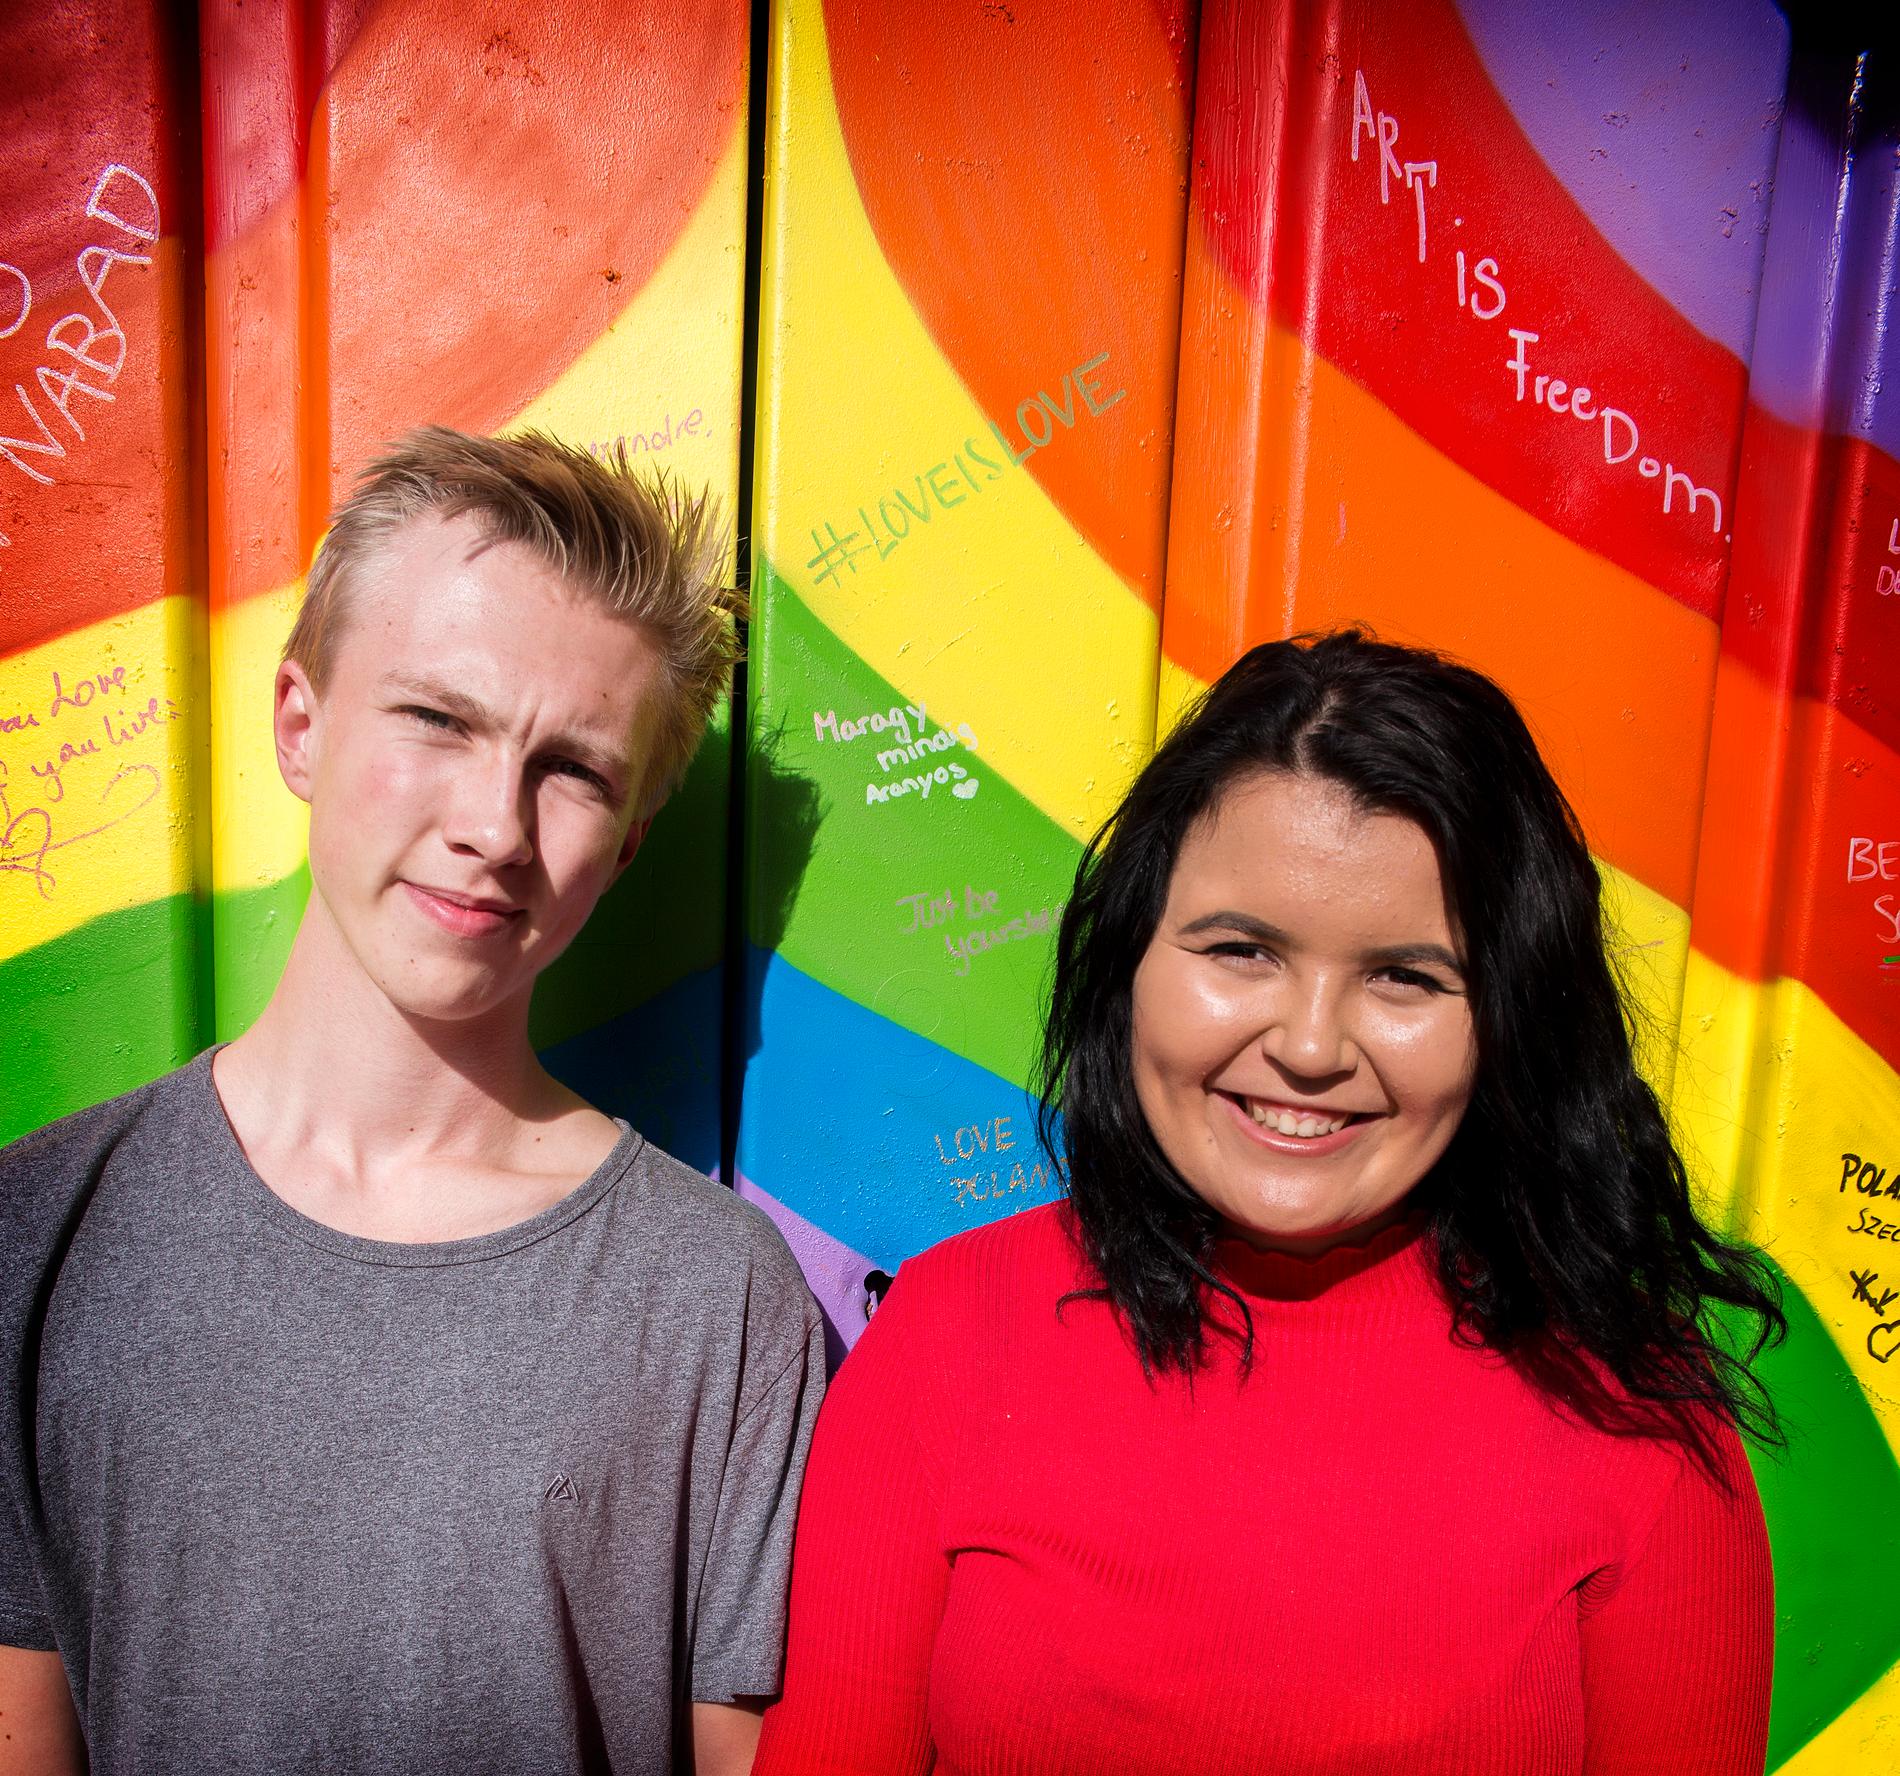  Andreas Ingebretsen og Nora Ånonsen Chayed rekker ikke å bli 18 før valgdagen. De neste ukene blir travle for de to politikerne.